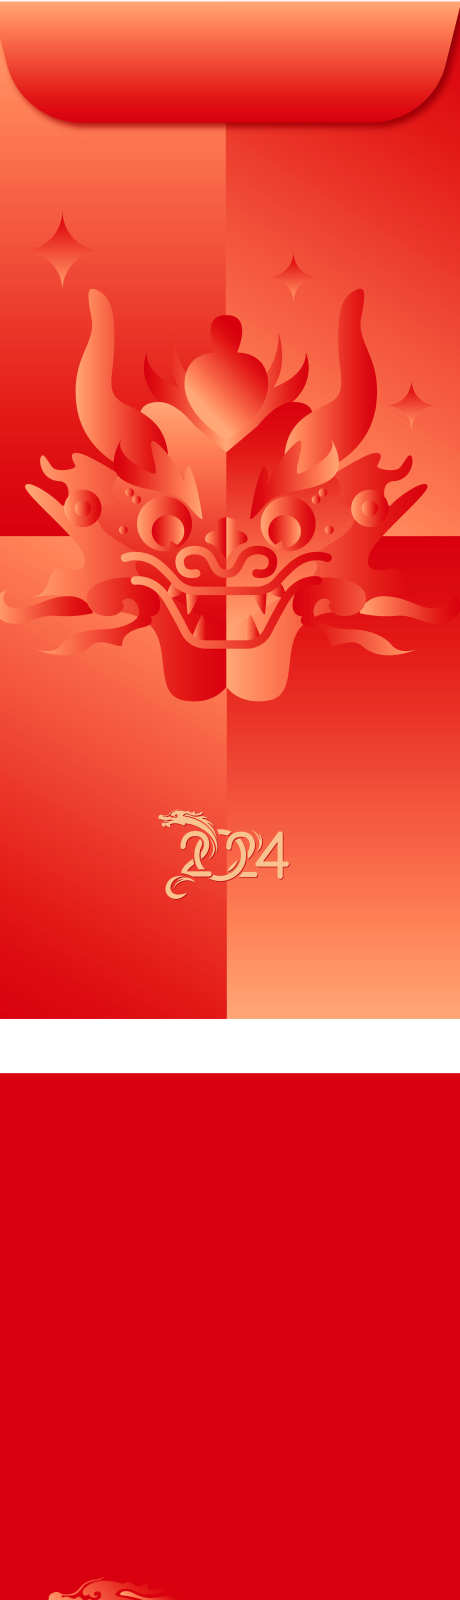 2024龙年红包设计_源文件下载_AI格式_2920X13237像素-龙,插画,创意,红色,红包,龙年,新年-作品编号:2023120816497813-志设-zs9.com